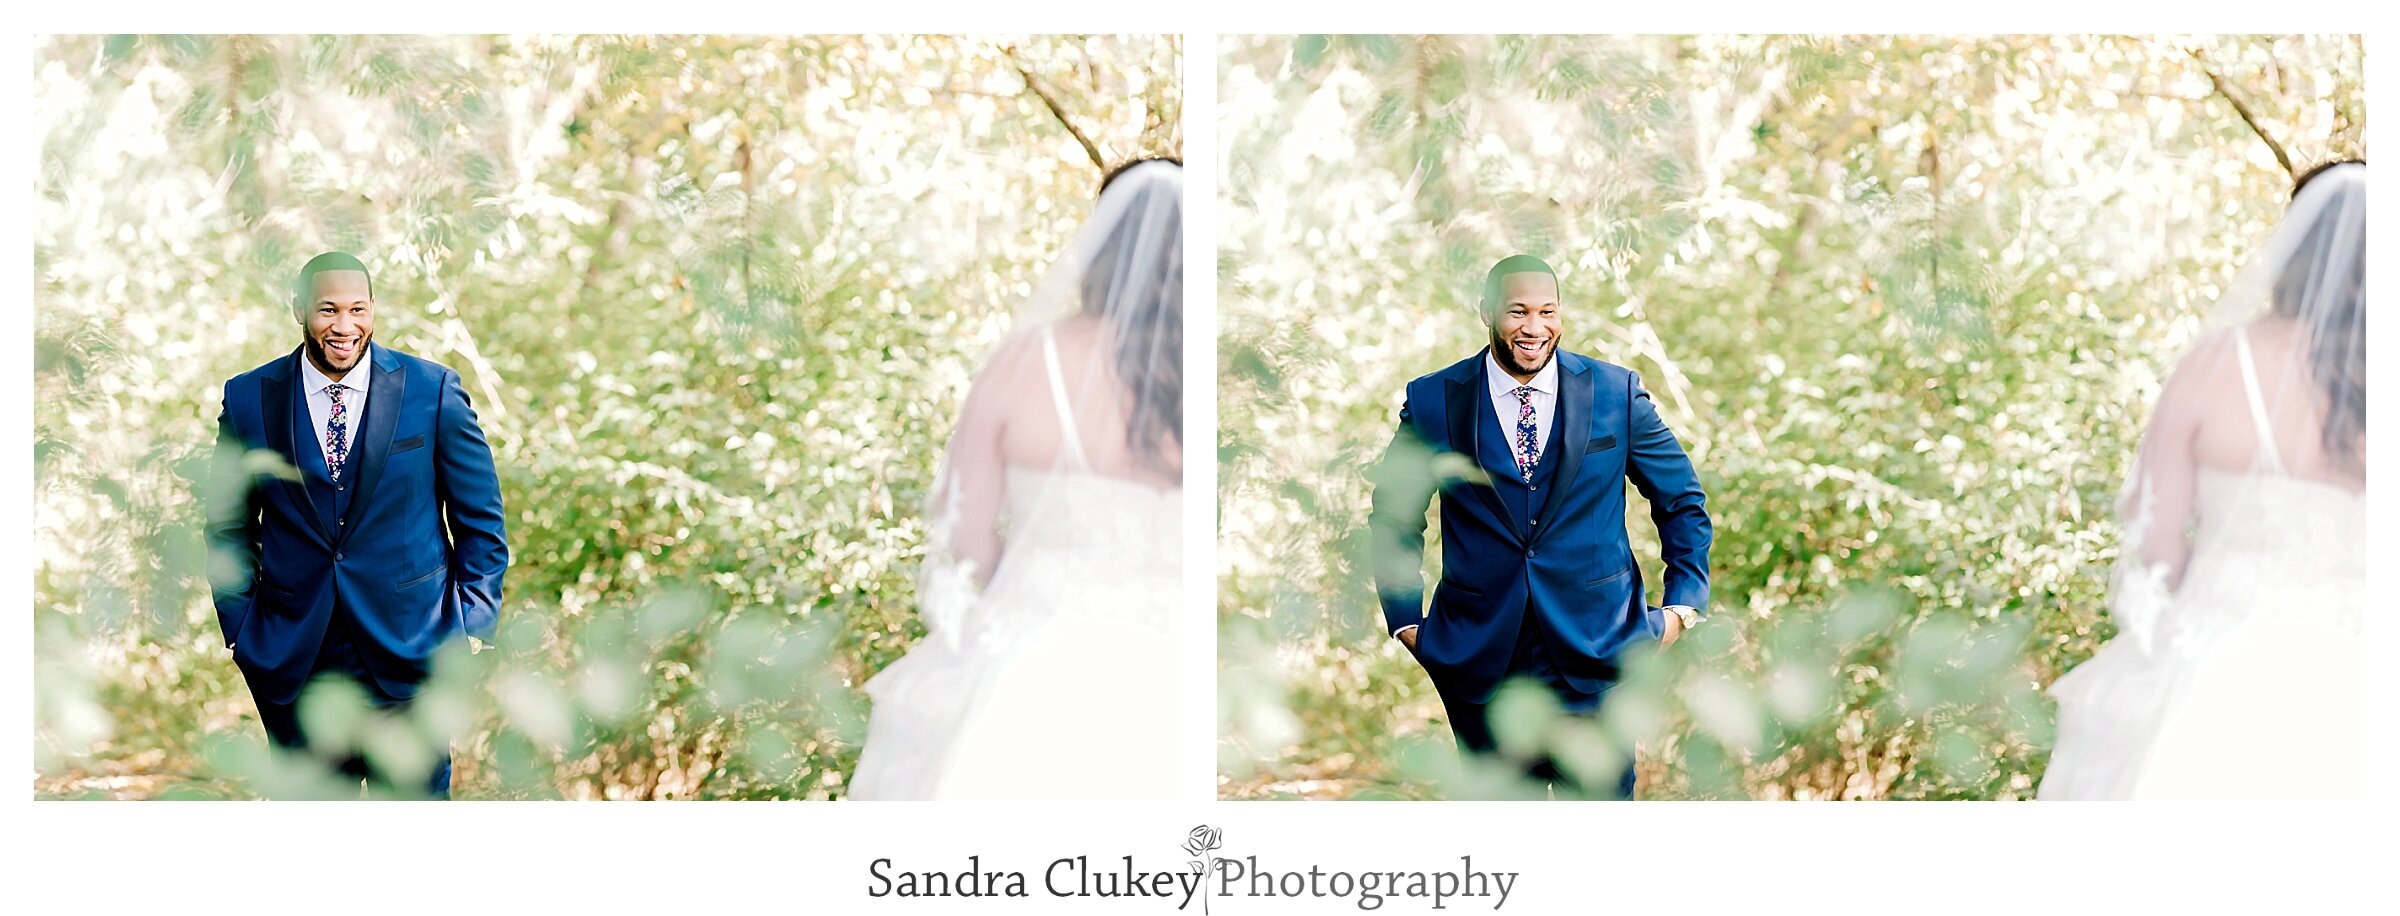 Sandra Clukey Photography_2158.jpg